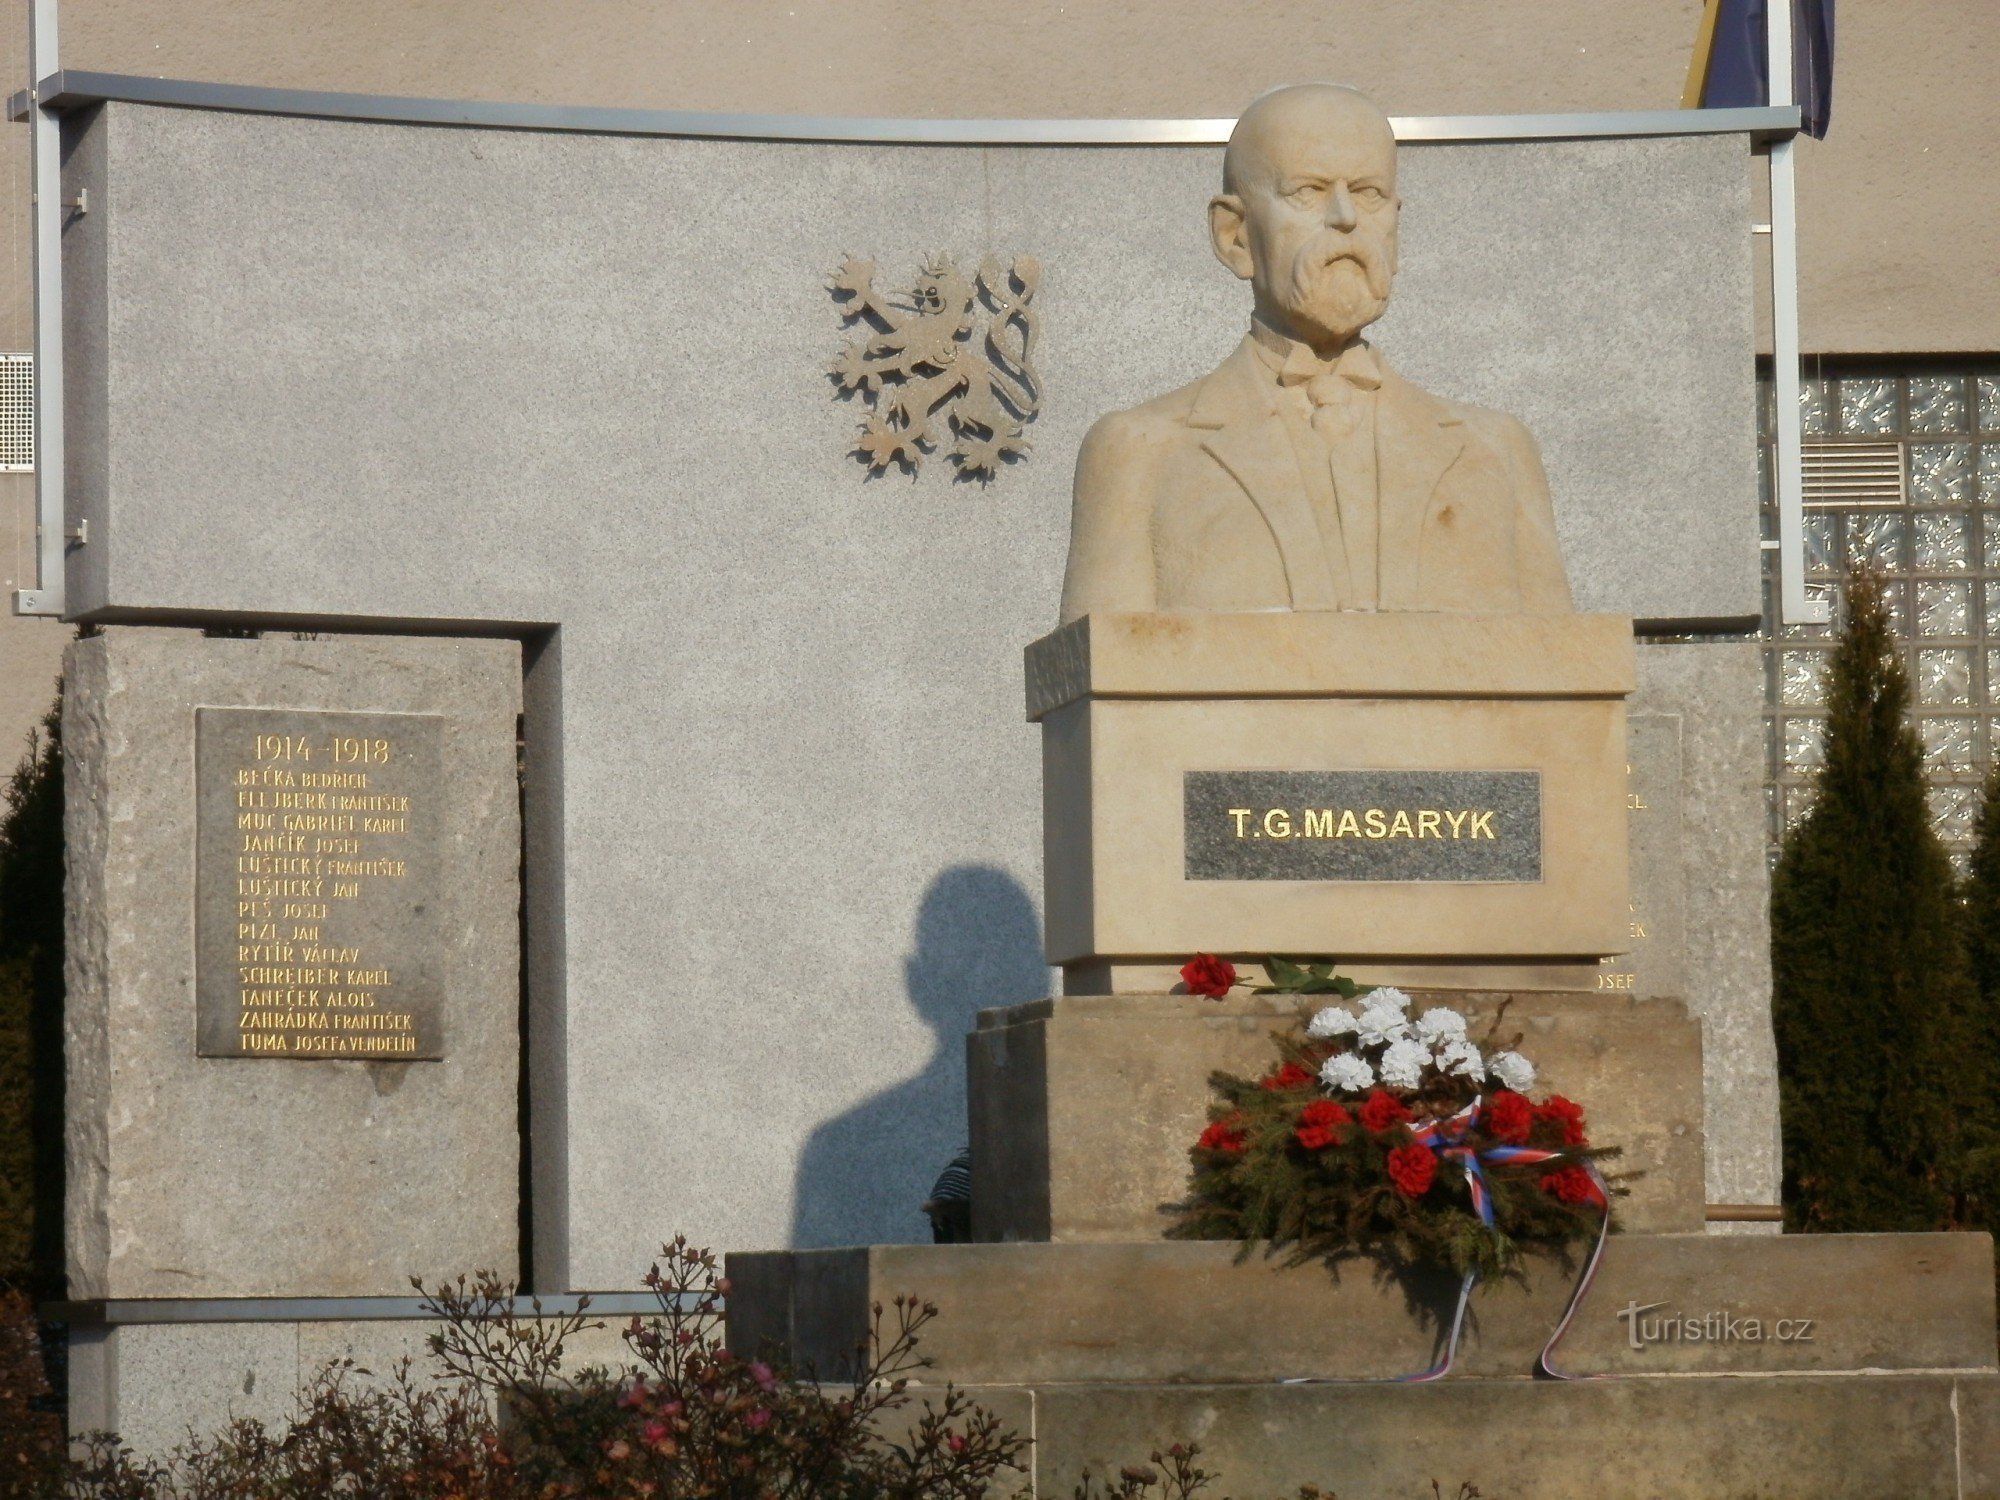 Valdice - TG Masaryk monument